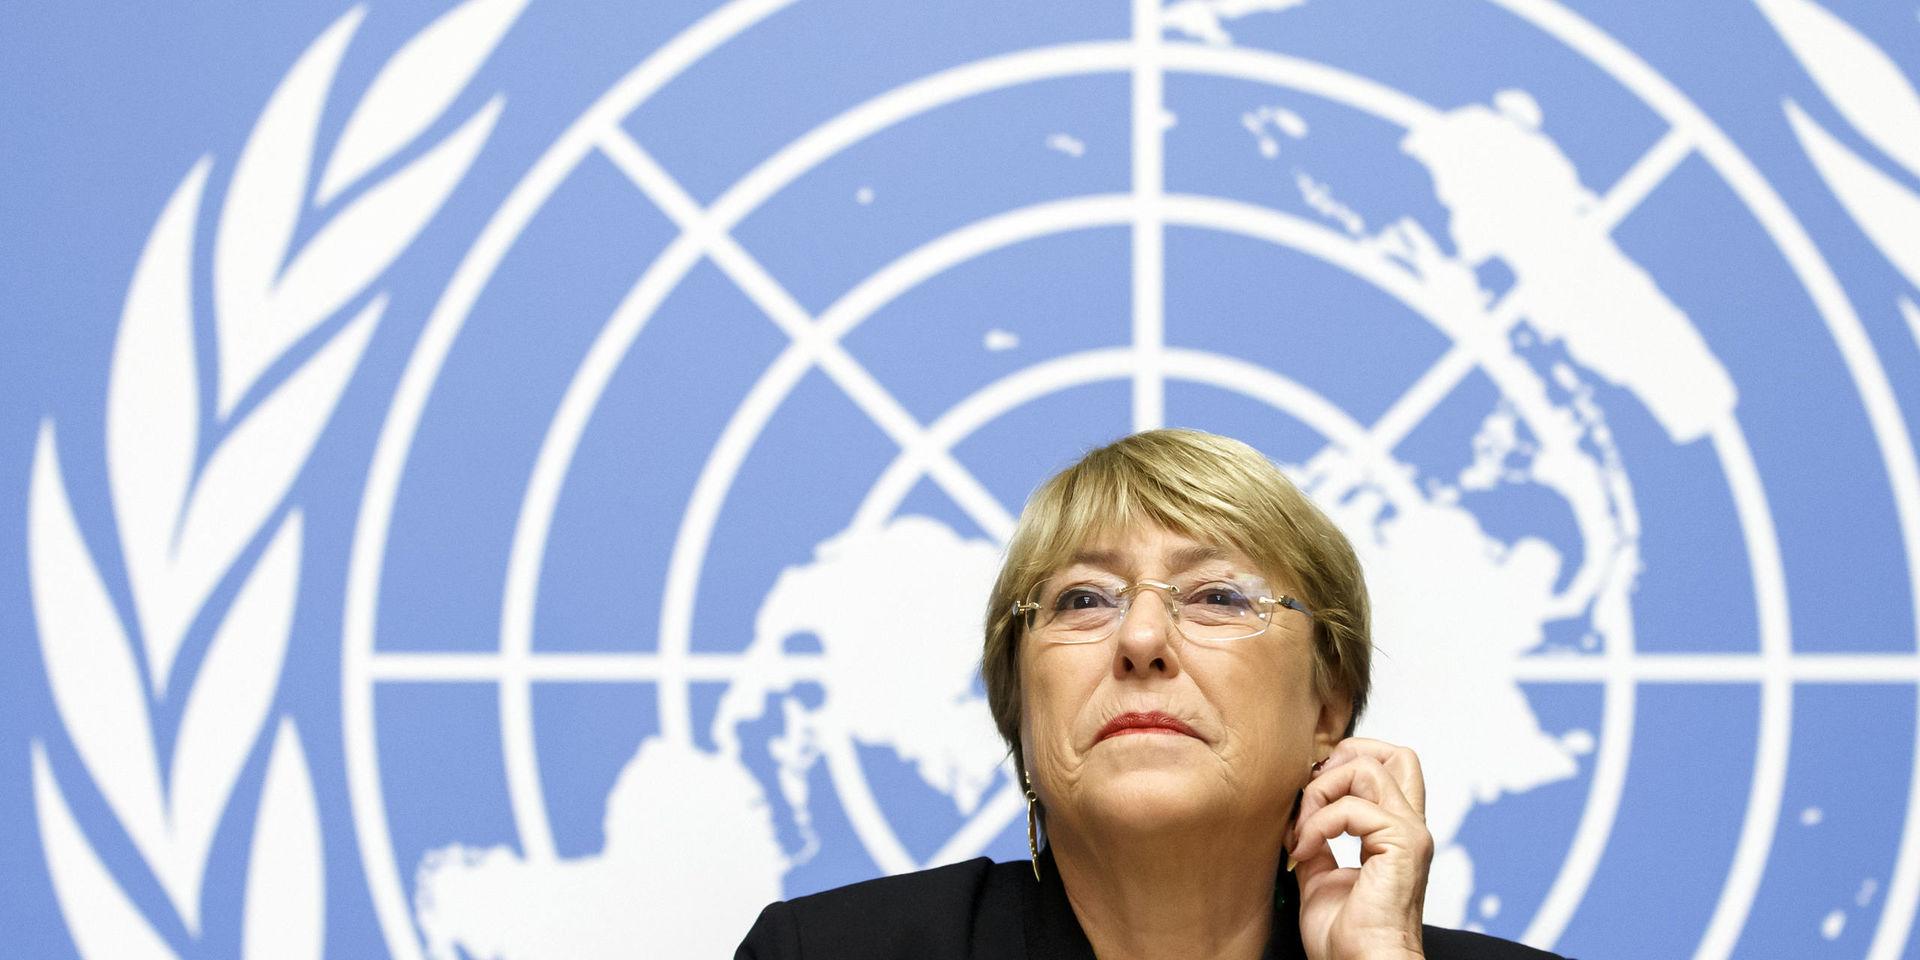 FN:s människorättschef Michelle Bachelet uppmanar länder att släppa fångar som dömts för lindriga brott eller som tillhör riskgrupper för att undvika att coronapandemin får fäste på anstalter.